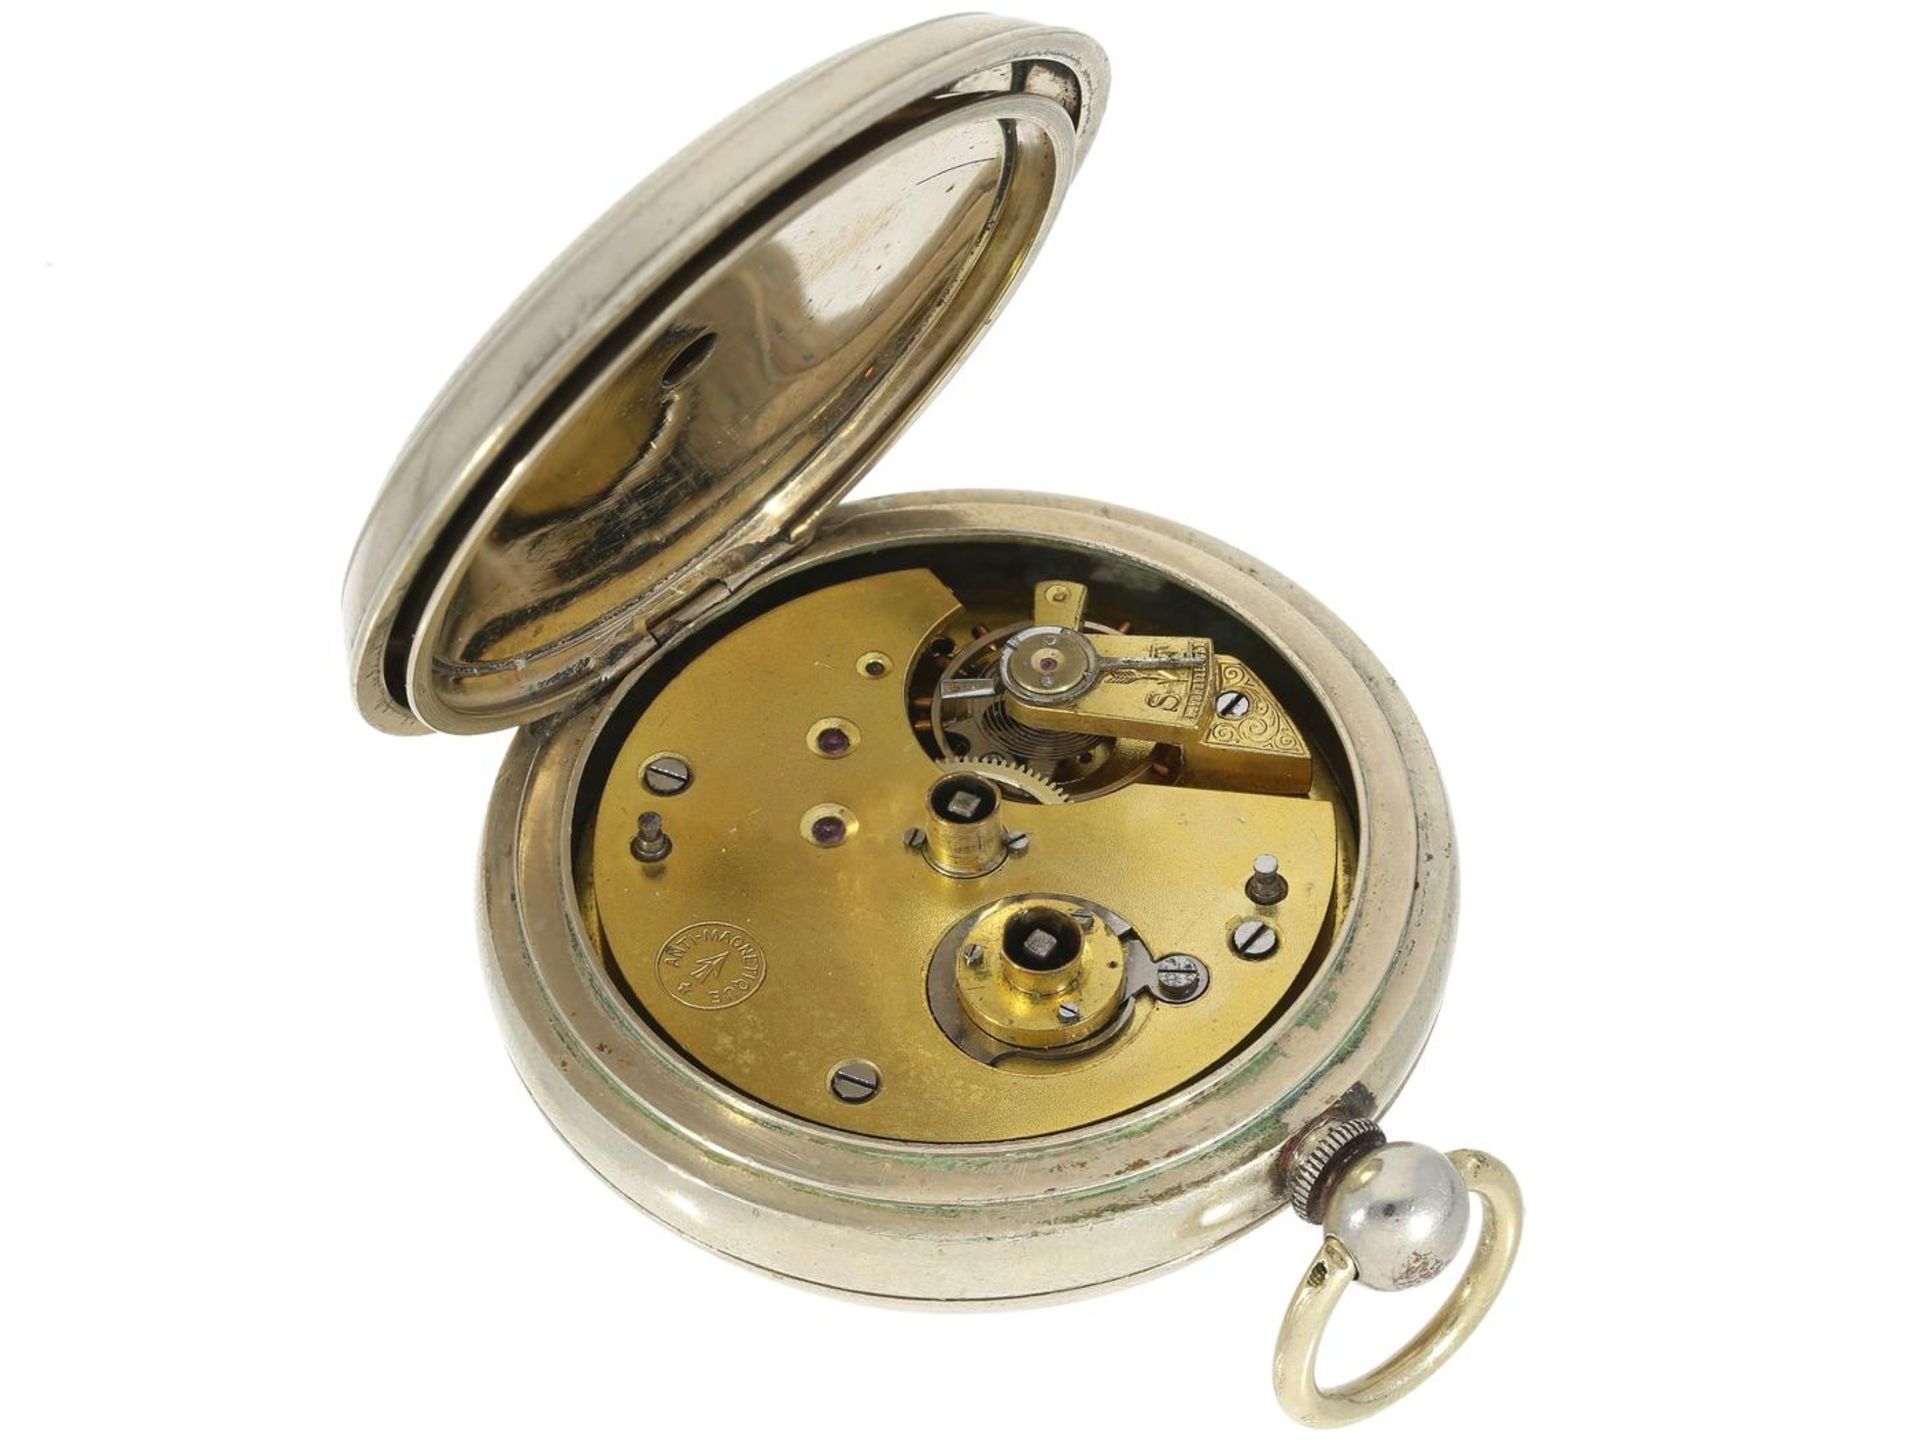 Taschenuhr: schwere Schweizer Taschenuhr für den englischen Markt "Excello Lever", H. Spencer, - Bild 2 aus 2